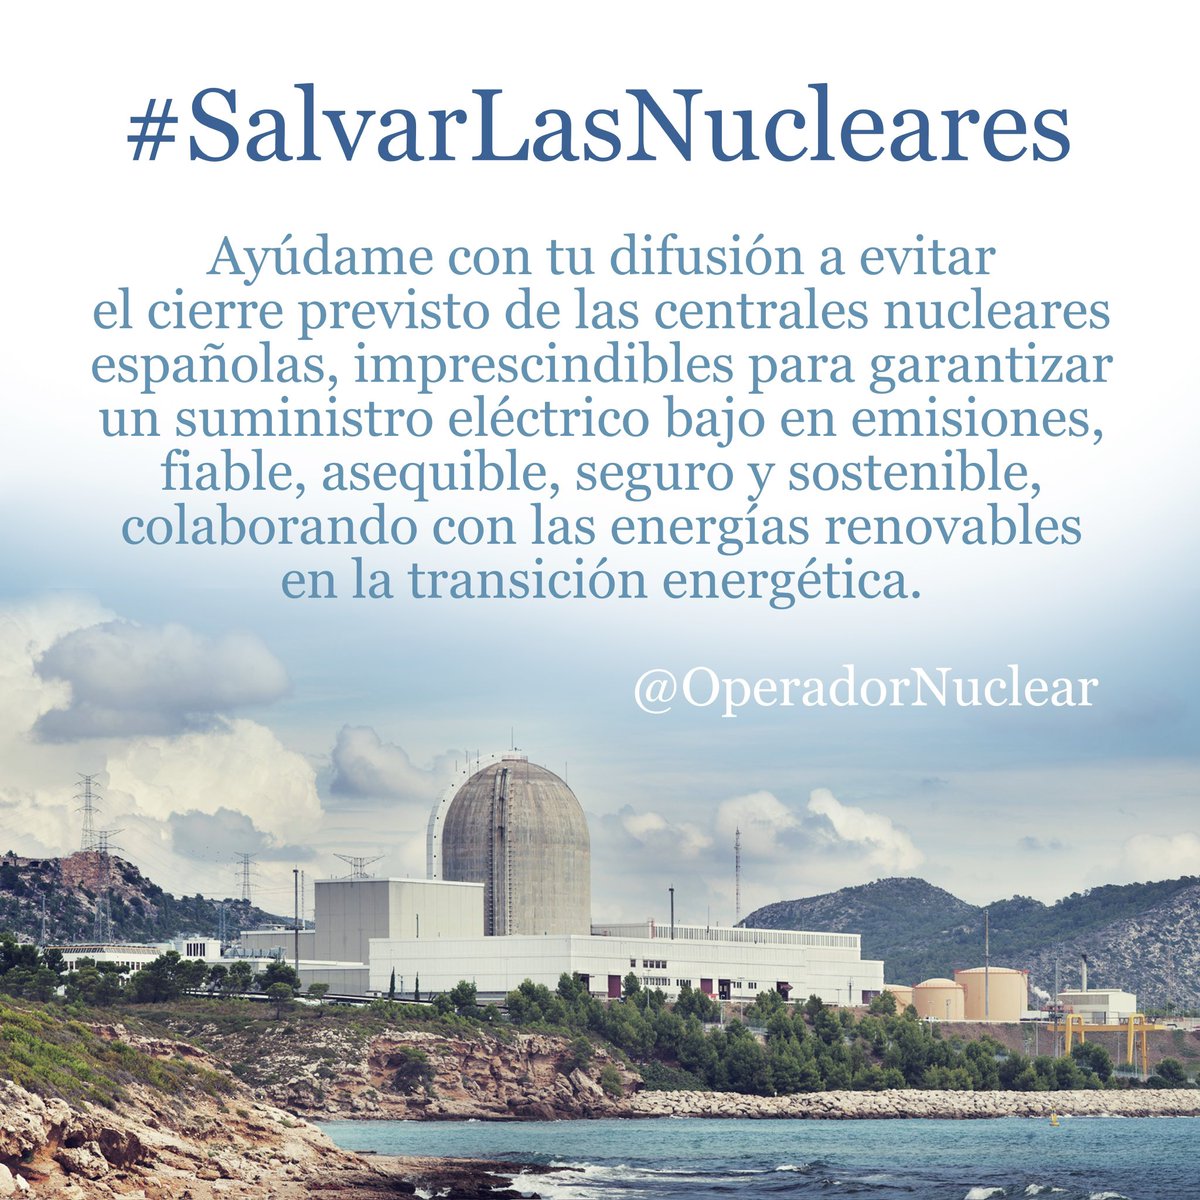 ¿Me ayudas a #SalvarLasNucleares? Para concienciar a más personas te propongo compartir la imagen en tus redes sociales y de mensajería, así como usar la etiqueta cuando publiques y comentes noticias sobre el cierre nuclear.